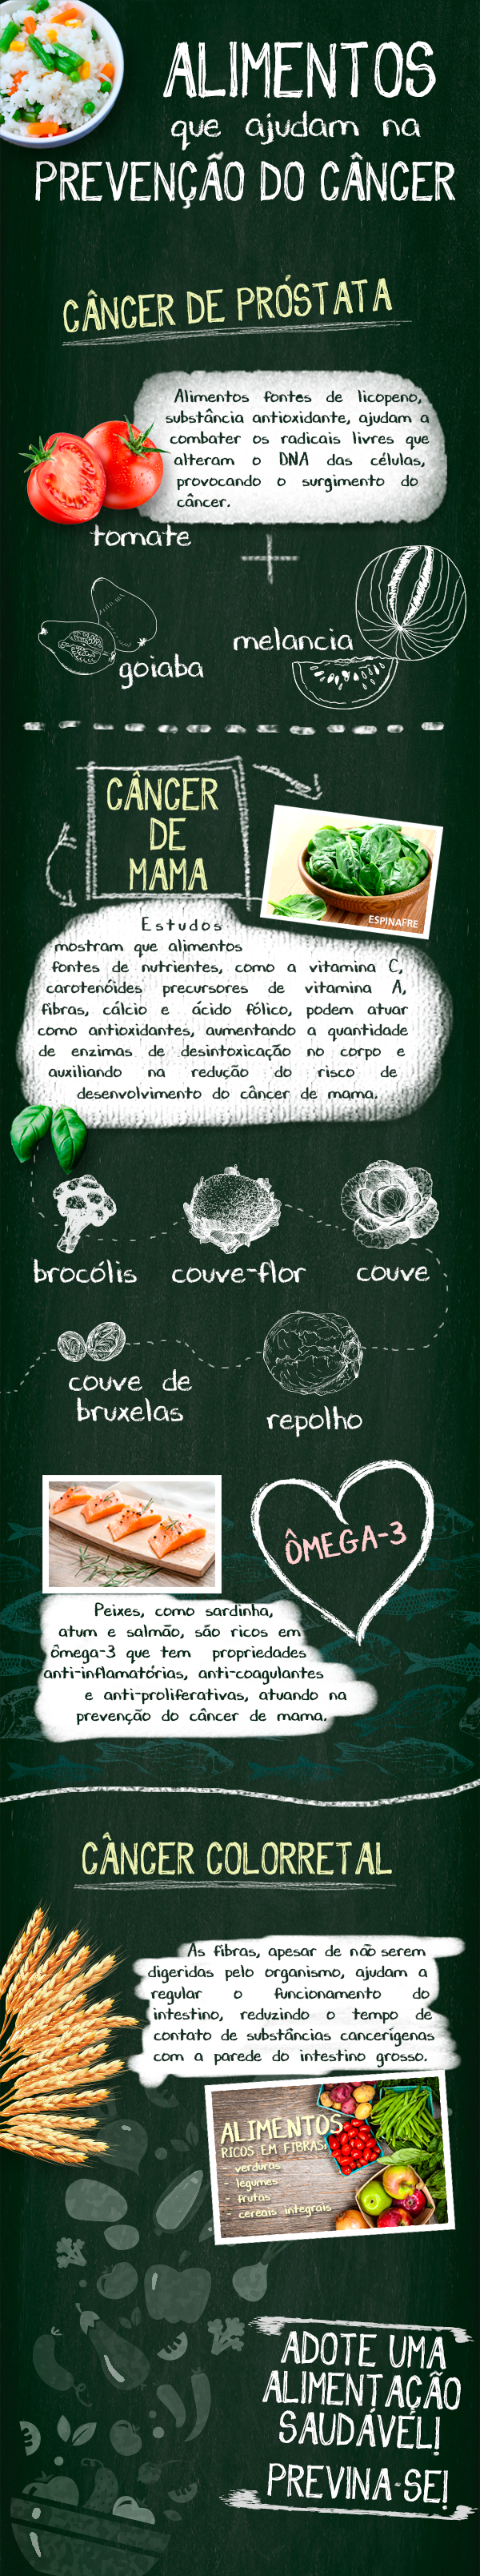 infográfico alimentos Prevenção para o câncer